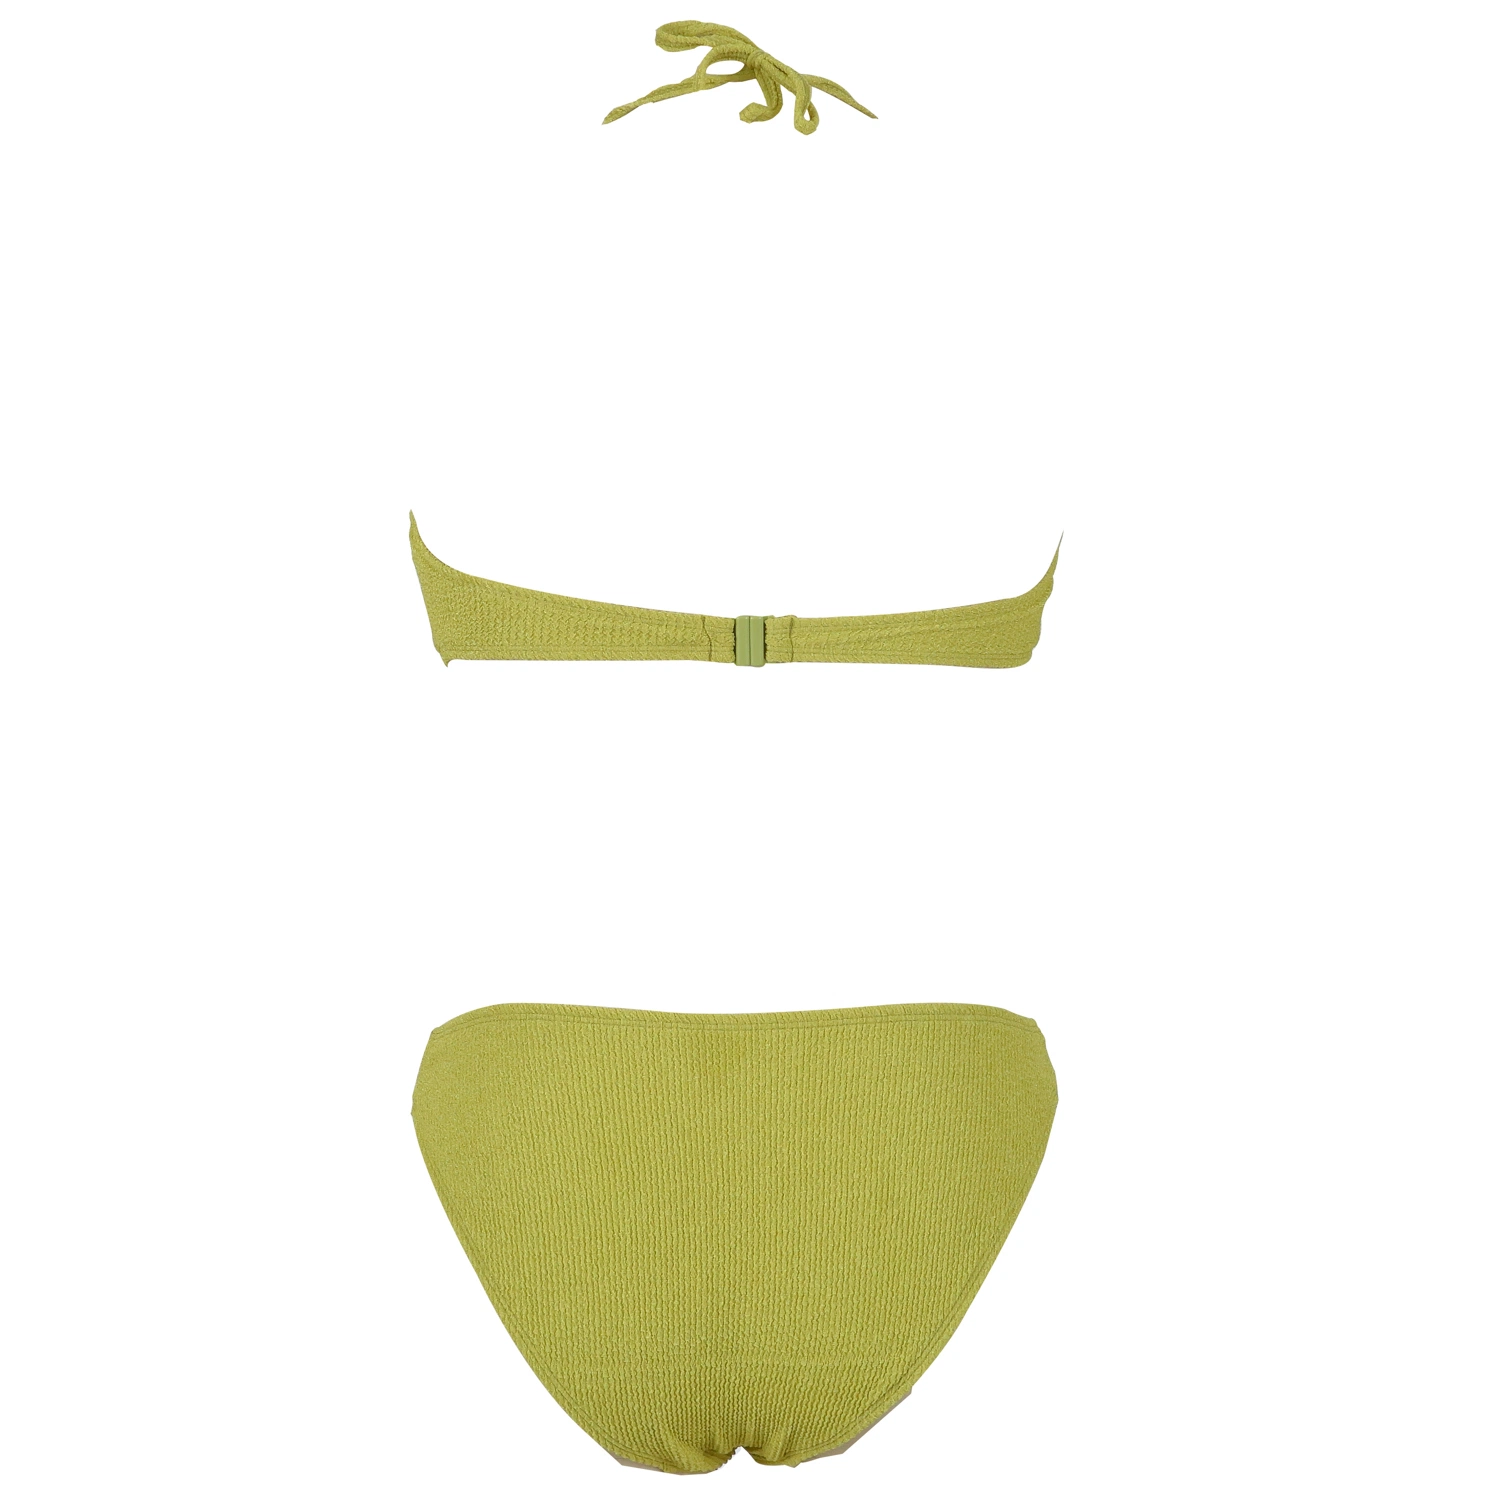 La mujer de dos piezas rizó Bikini Sexy nylon poliéster Spandex Triángulo Impresión Tropical Tankini traje de baño diseñador Traje de baño para damas Sandbeach SPA trajes de baño